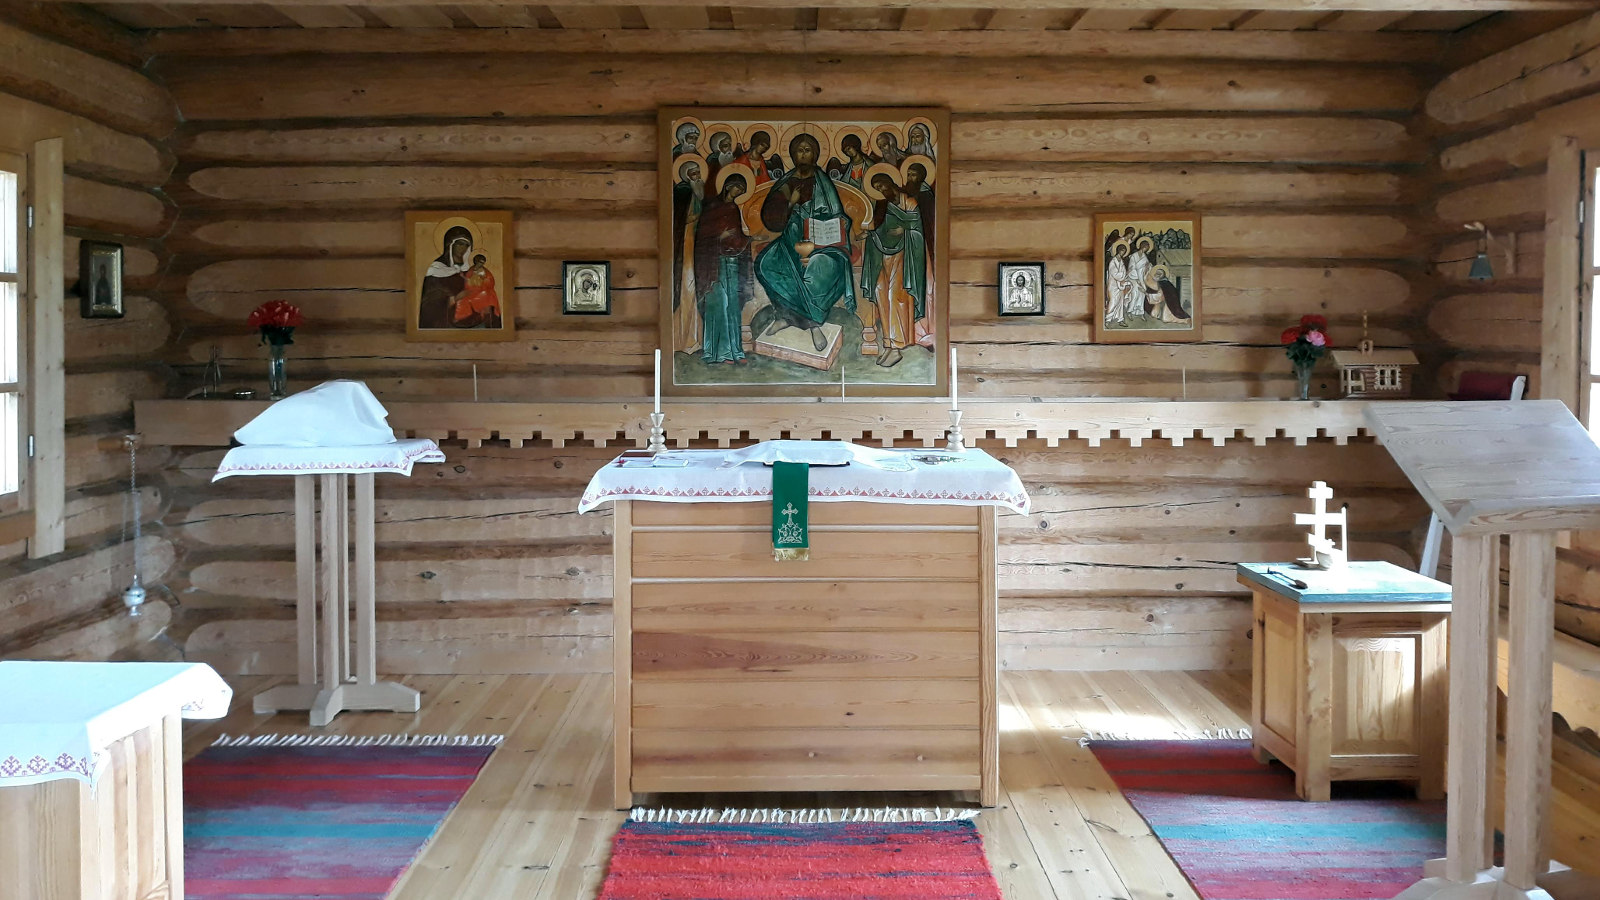 Kuvassa on Kaavin tsasounan sisätila, jossa on hirsisessä rakennuksessa  puukalusteet sekä puinen alttari keskellä.  Seinällä on ikoneita ja suurin keskellä.